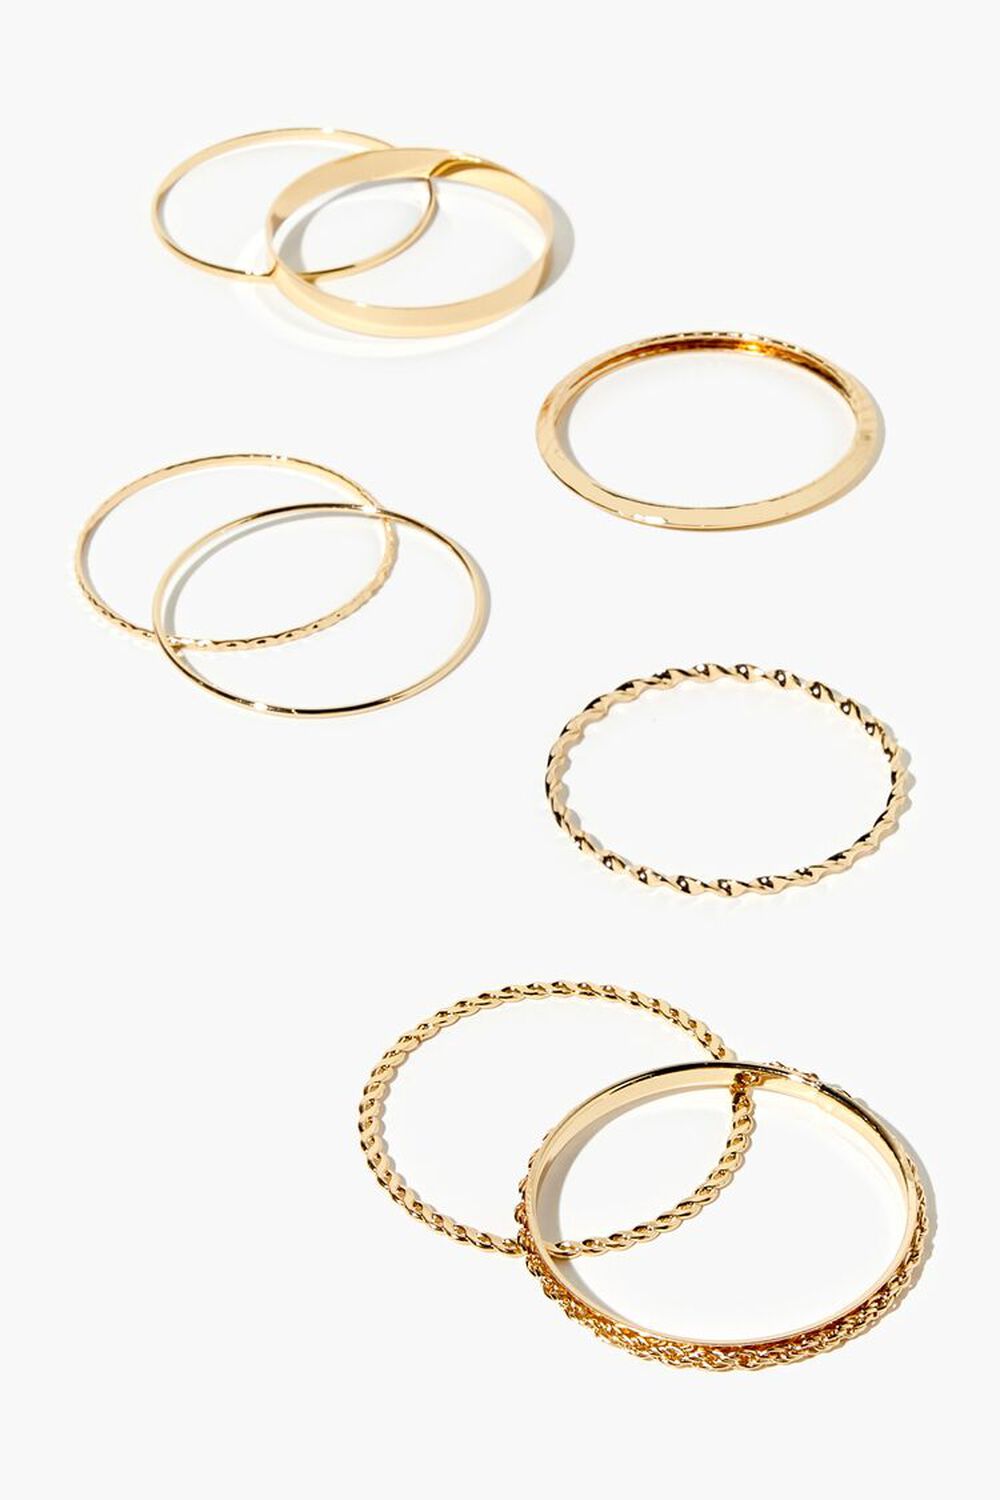 GOLD Assorted Bangle Bracelet Set, image 1